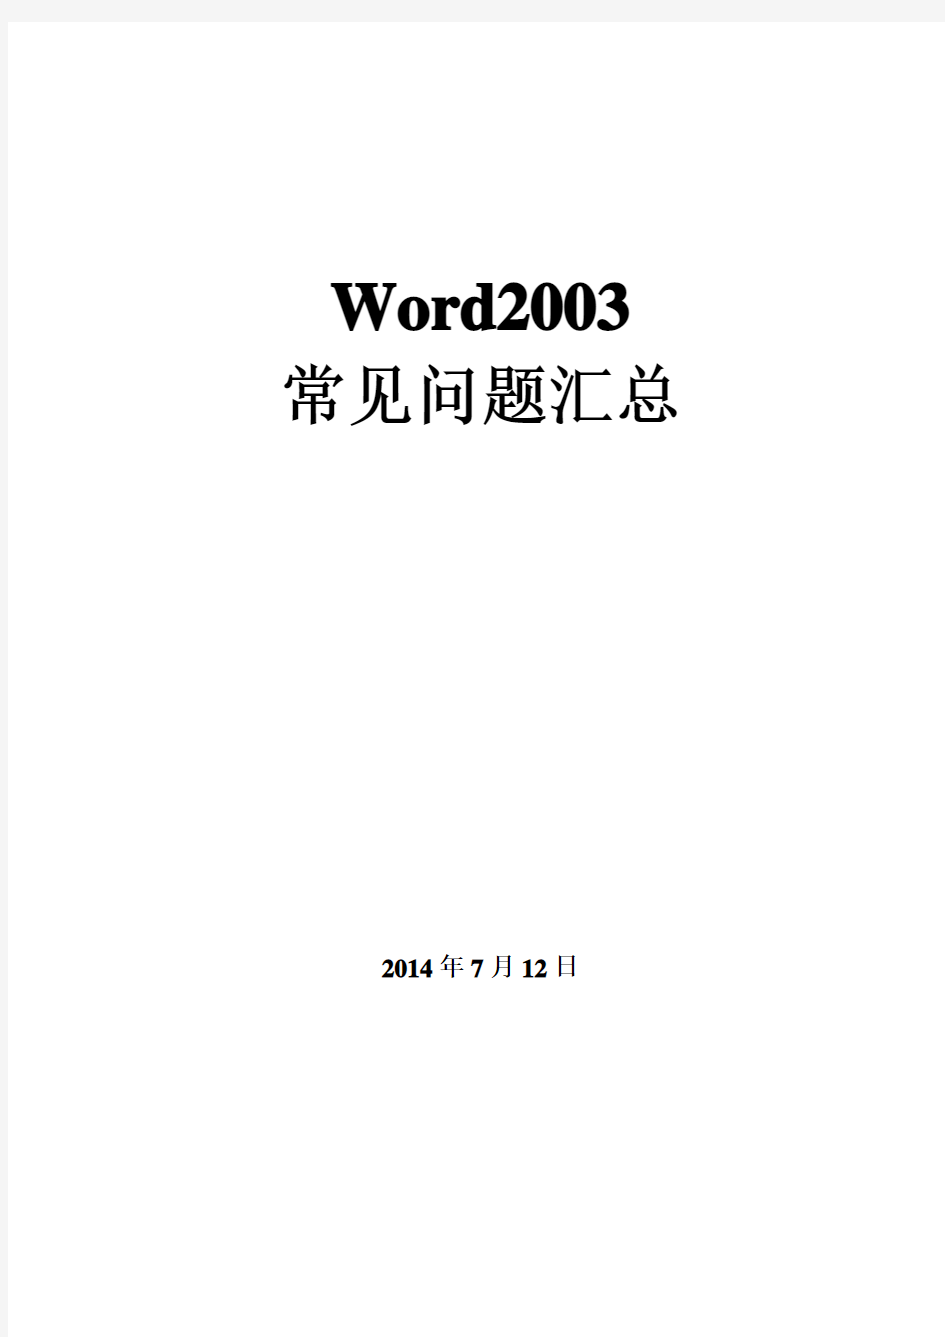 Word2003 常见问题汇总